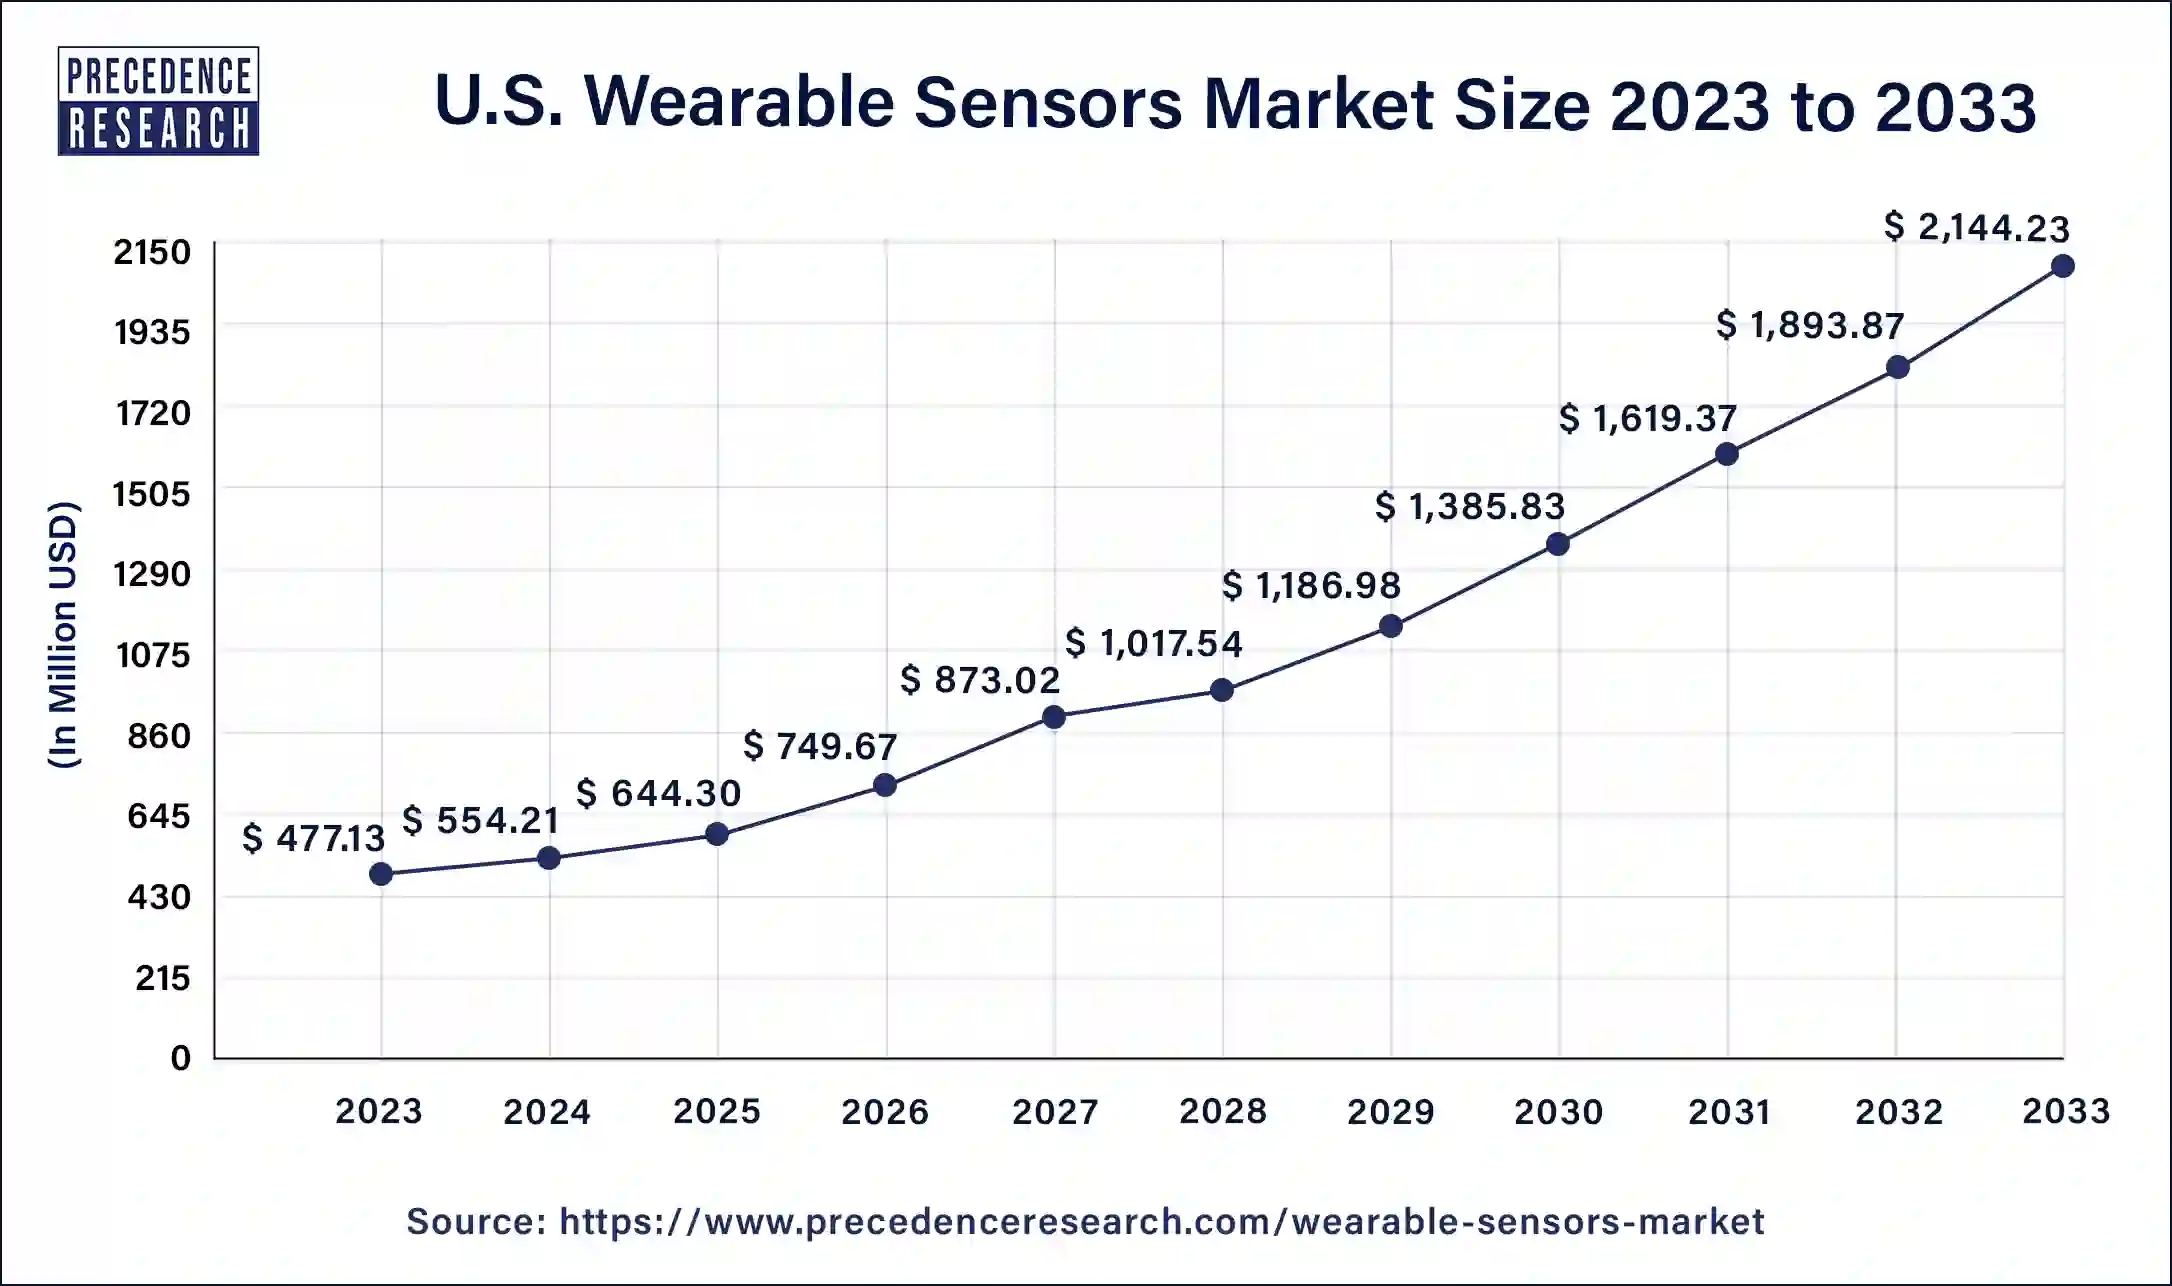 U.S. Wearable Sensors Market Size 2024 to 2033